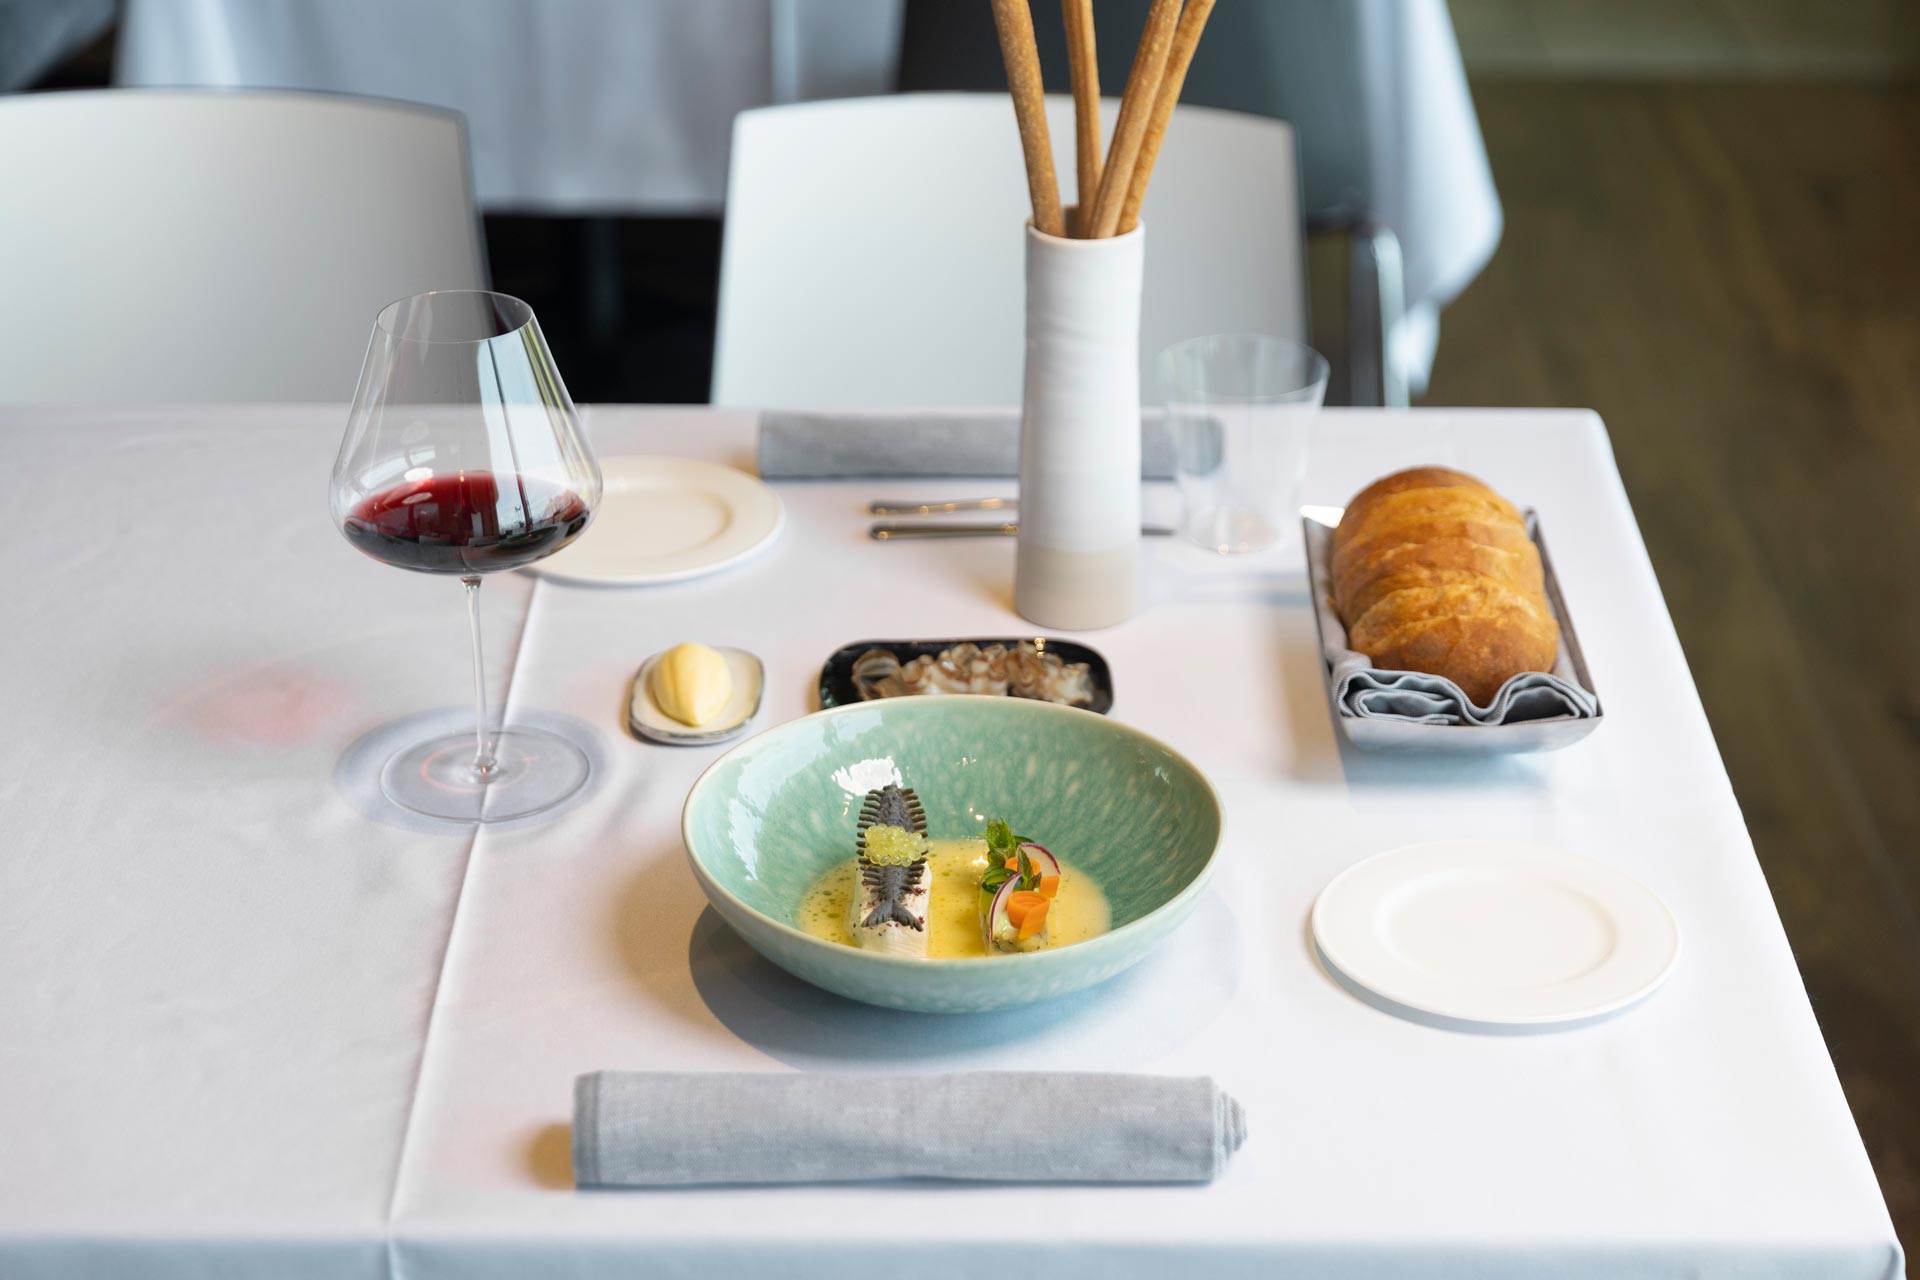 Gefüllte Tortelli garniert mit Parmesanflocken, begleitet von einem raffinierten Weißwein Hotel Ciasa de Munt in Alta Badia 